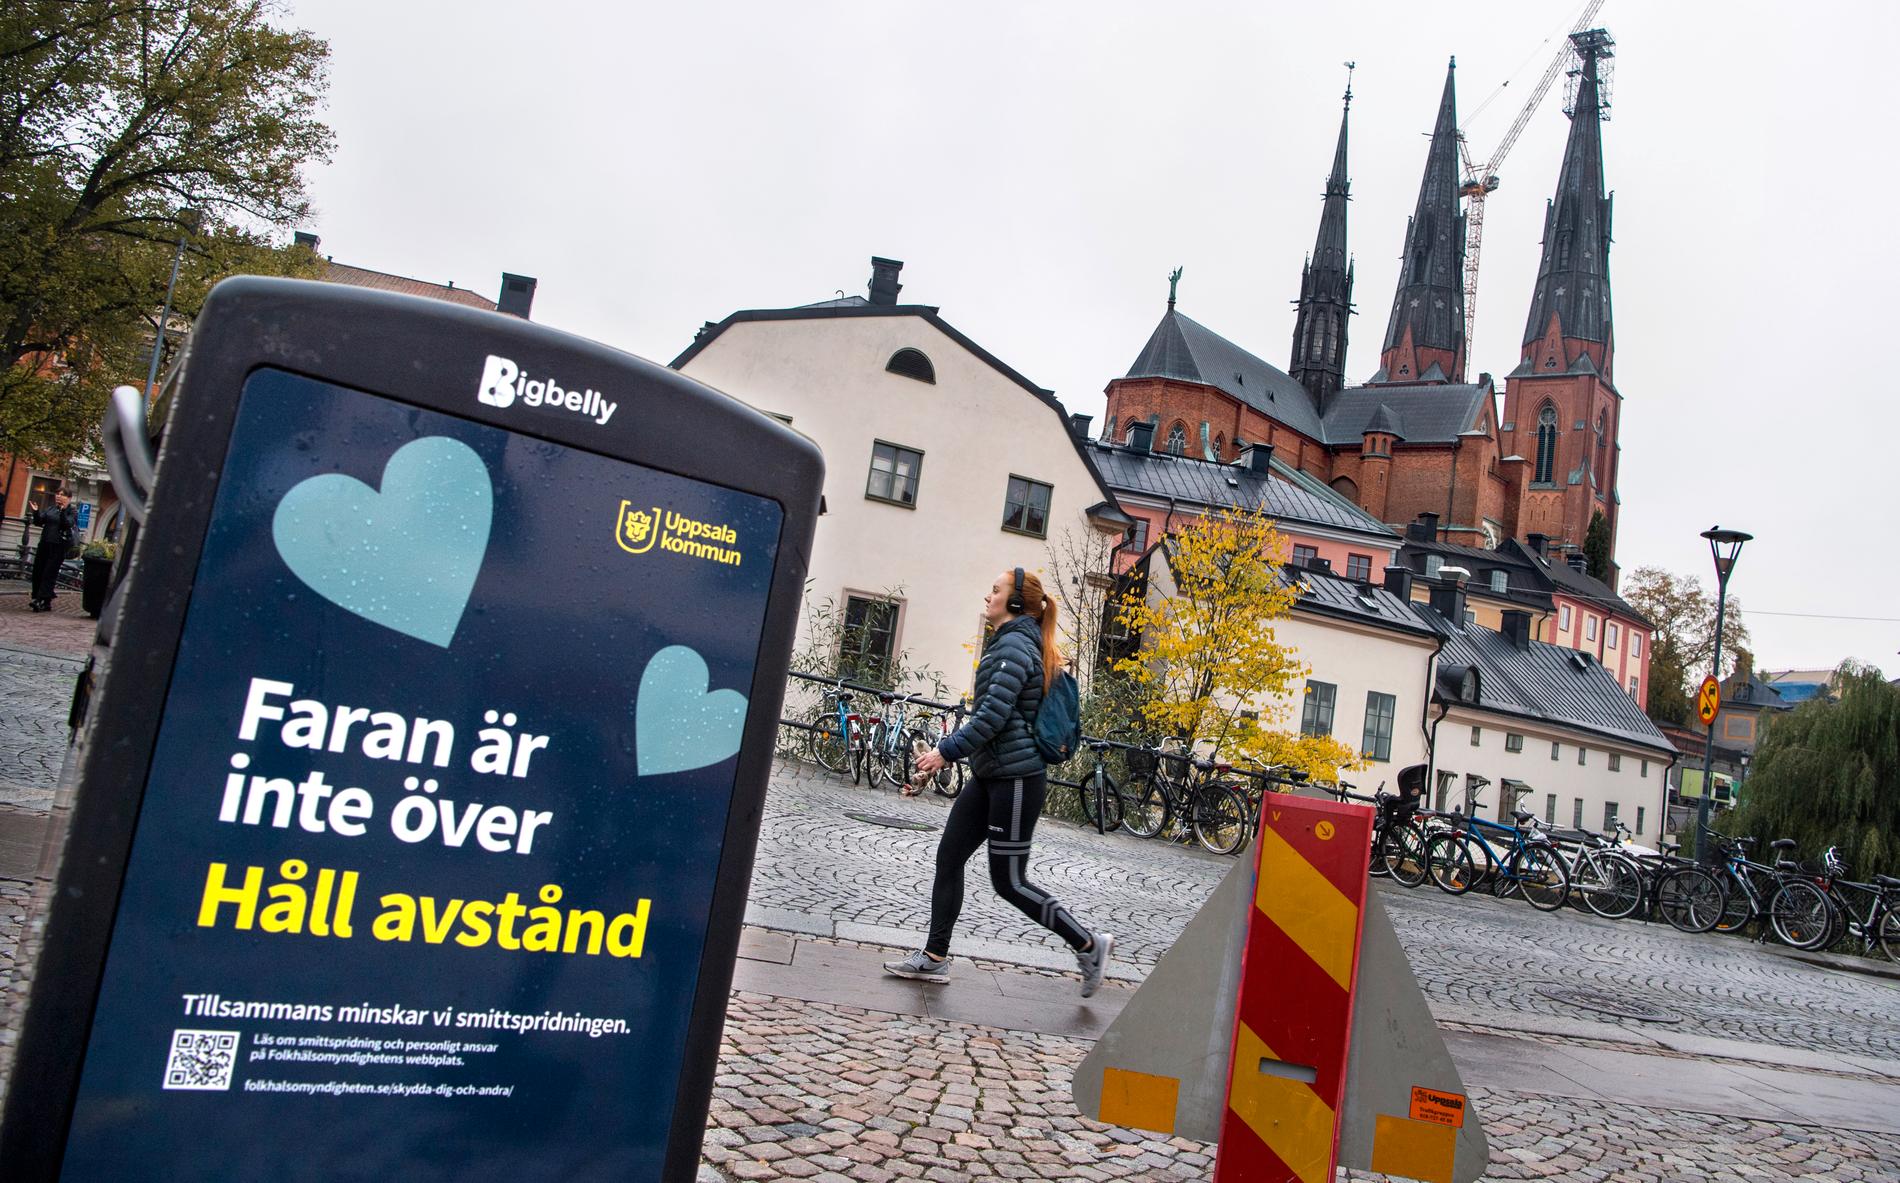 En affisch från Uppsala kommun som uppmanar att hålla avstånd och att faran inte är över när det gäller smittspridningen.